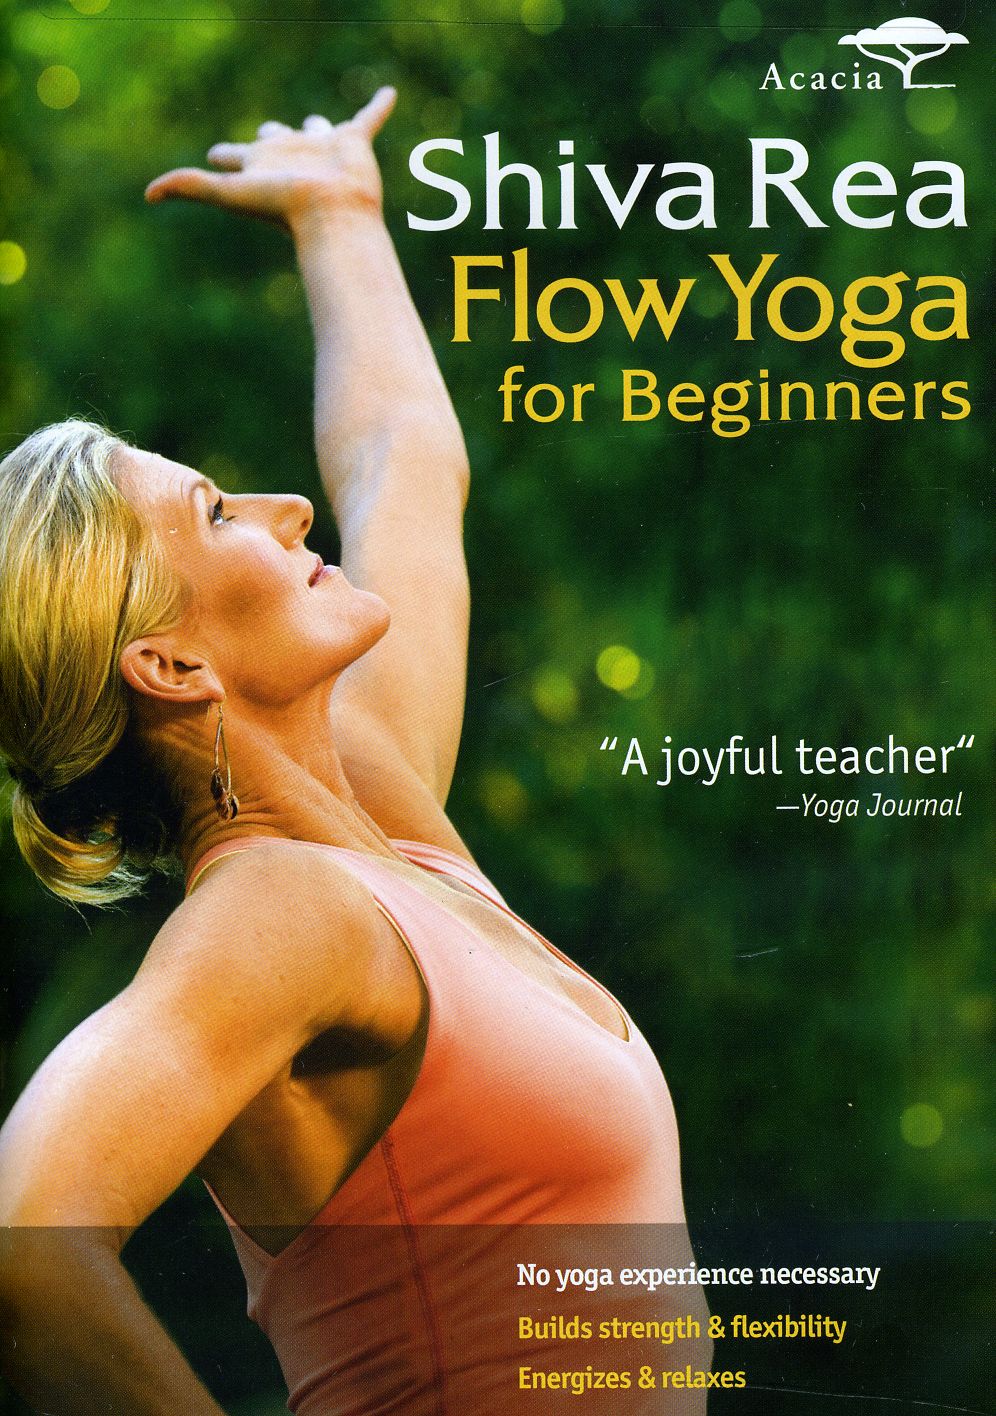 Shiva Rea Flow Yoga for Beginners (DVD)